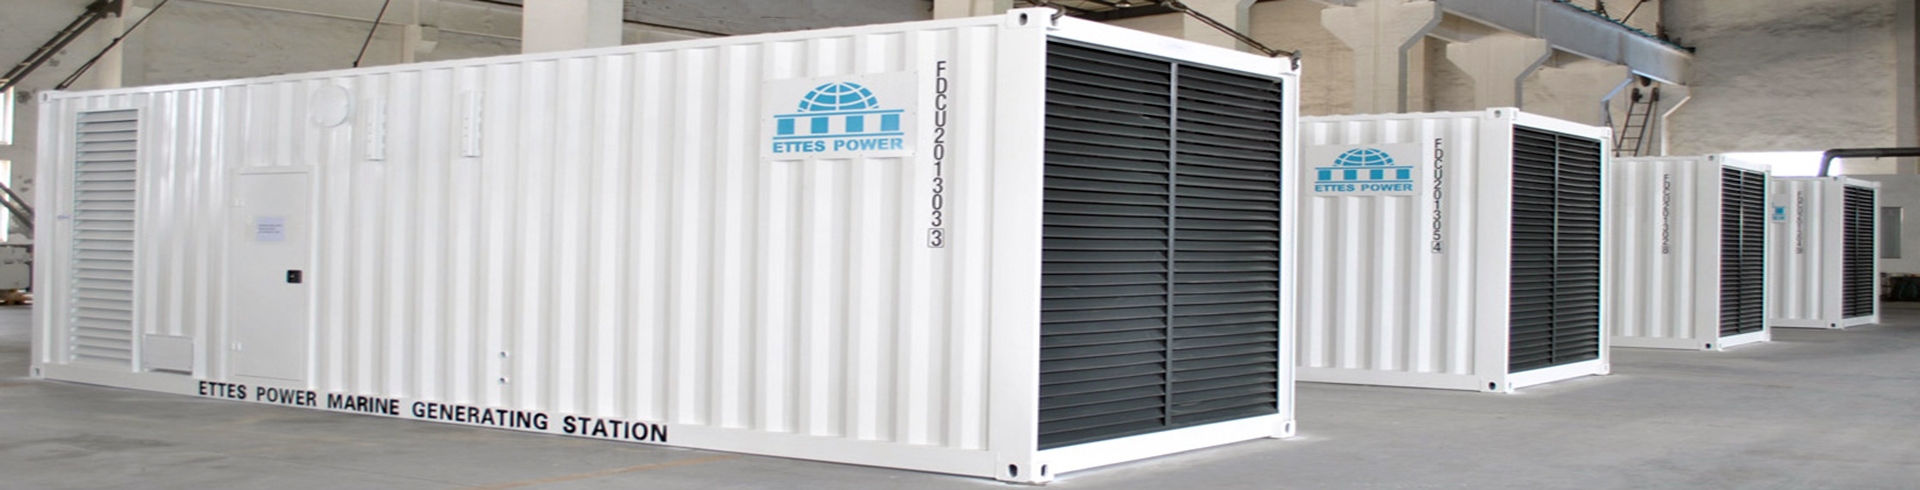 Ettespower-1000kw-Container-MWM-Deutz-Marine-Diesel-Engine-Generator-Set-by-TBD620V12-Ettes-Power